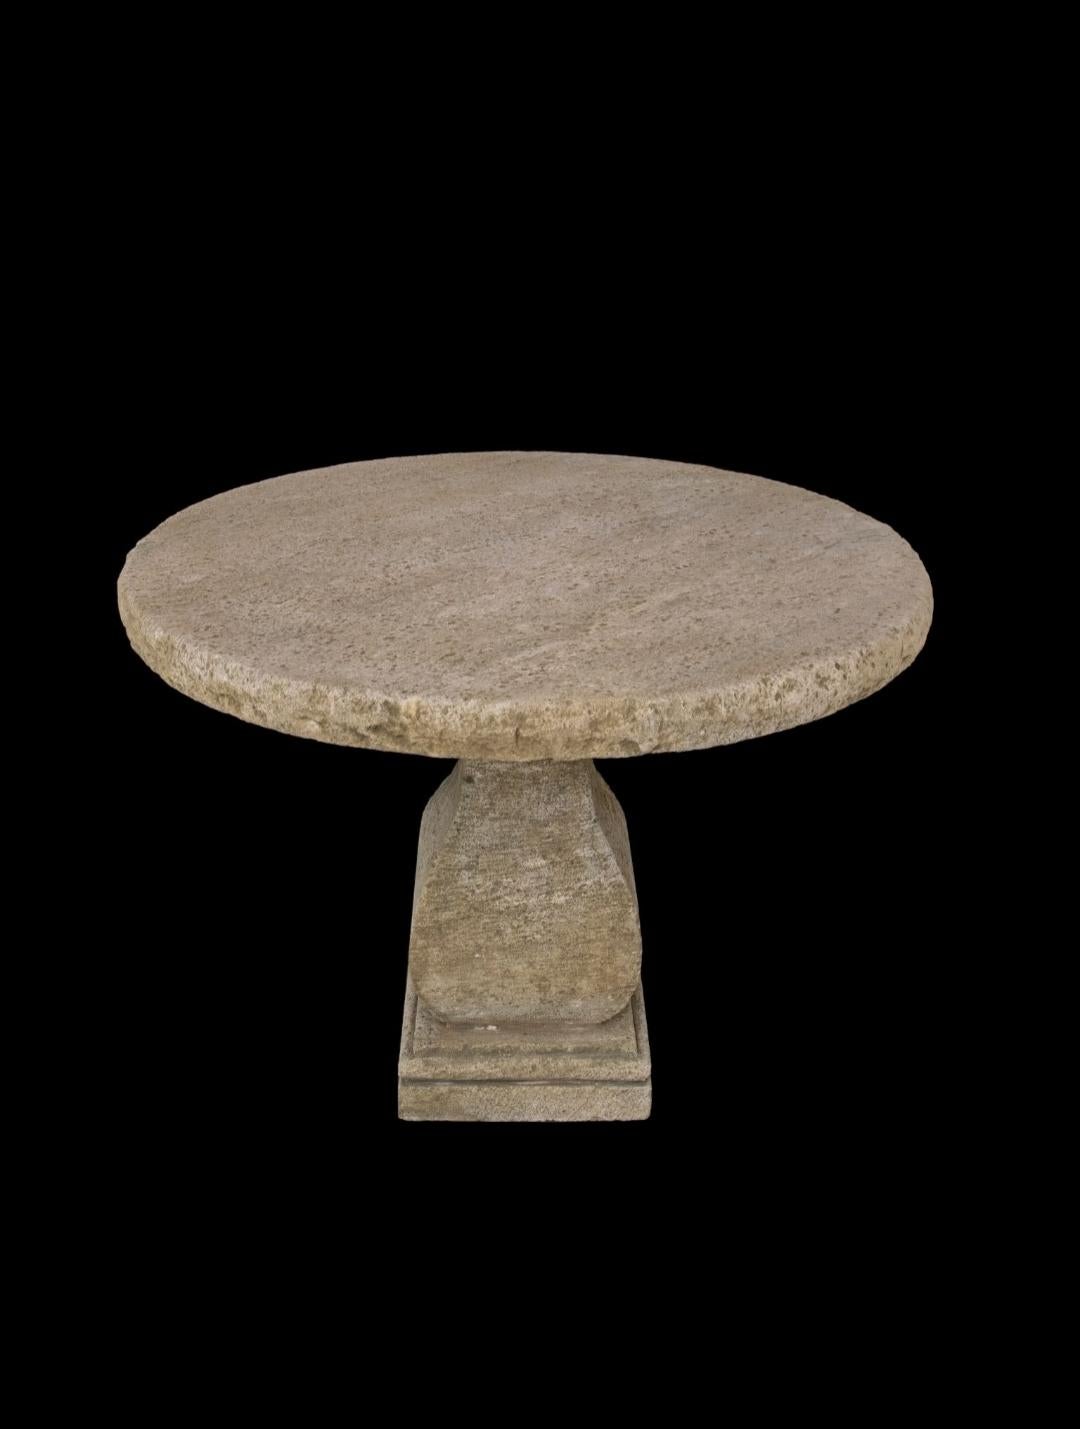 Cette jolie table ronde est l'une des 7 tables en pierre calcaire qui ont été récupérées dans une villa italienne privée des années 1930 avant d'être rénovée. Nous adorons la texture, la couleur et la patine en détresse de cette beauté naturellement